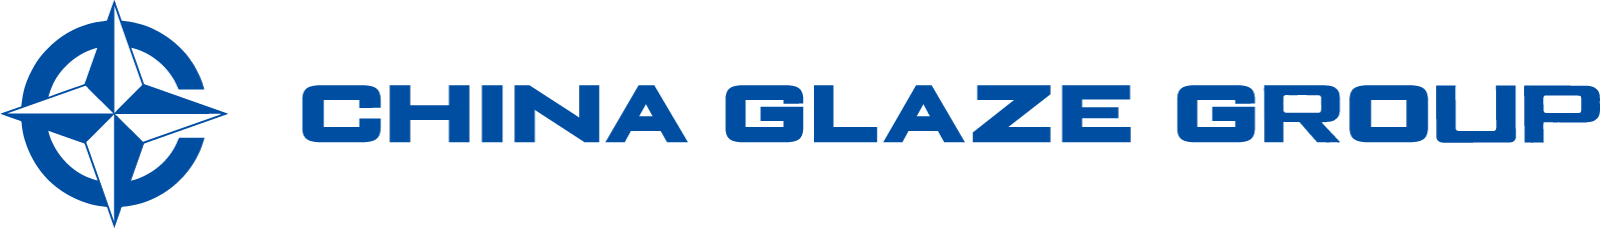 高品質なガラス粉末（ガラスフリット）やガラスパウダーやセラミックスフリット、セラミックスピグメント、釉薬、顔料を製造するChina Glaze Co., Ltd.（和名：チャイナグレーズ株式会社）は台湾本社のガラス粉末（ガラスフリット）やセラミックスピグメントの製造カンパニー。 導電ペースト用ガラス粉末（ガラスフリット）、自動車LEDライト用蛍光体分散ガラス、プロジェクター用蛍光体分散ガラス、建材デジタルプリントカラー顔料などを製造してます。ガラス粉末（ガラスフリット）、ガラスパウダー、ガラスフリット、ガラス微粉末、セラミック釉薬を利用した、LTCC、PiG、顔料、建材、などの材料として研究開発から製造をサポートします。2022年5月に日本窓口としてChina Glaze Co., Ltd.（和名：チャイナグレーズ株式会社） 東京デスクを設立しました。